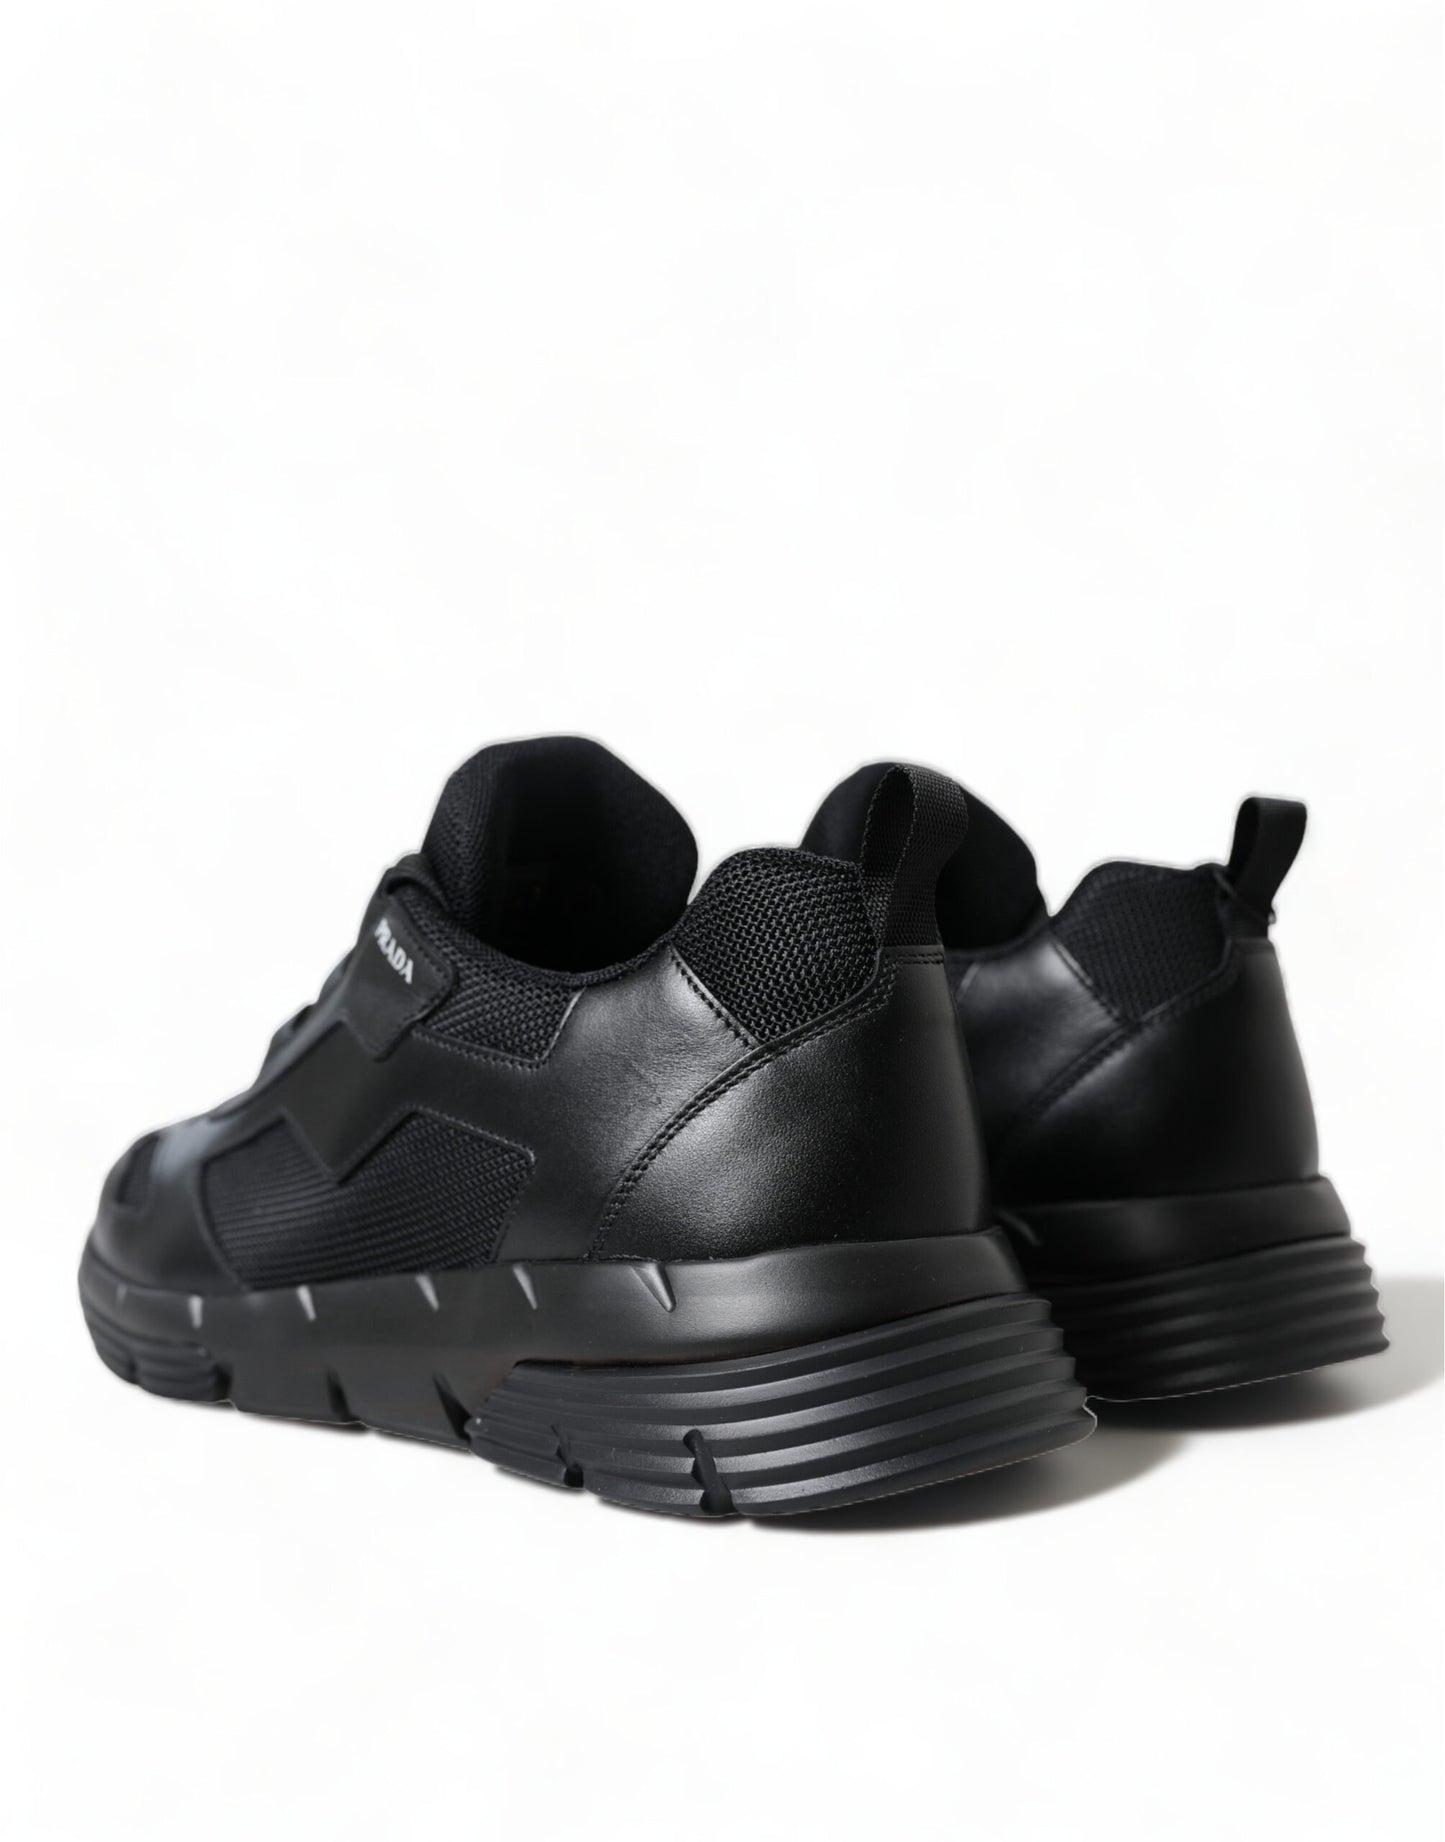 Sleek Low Top Leather Sneakers in Timeless Black